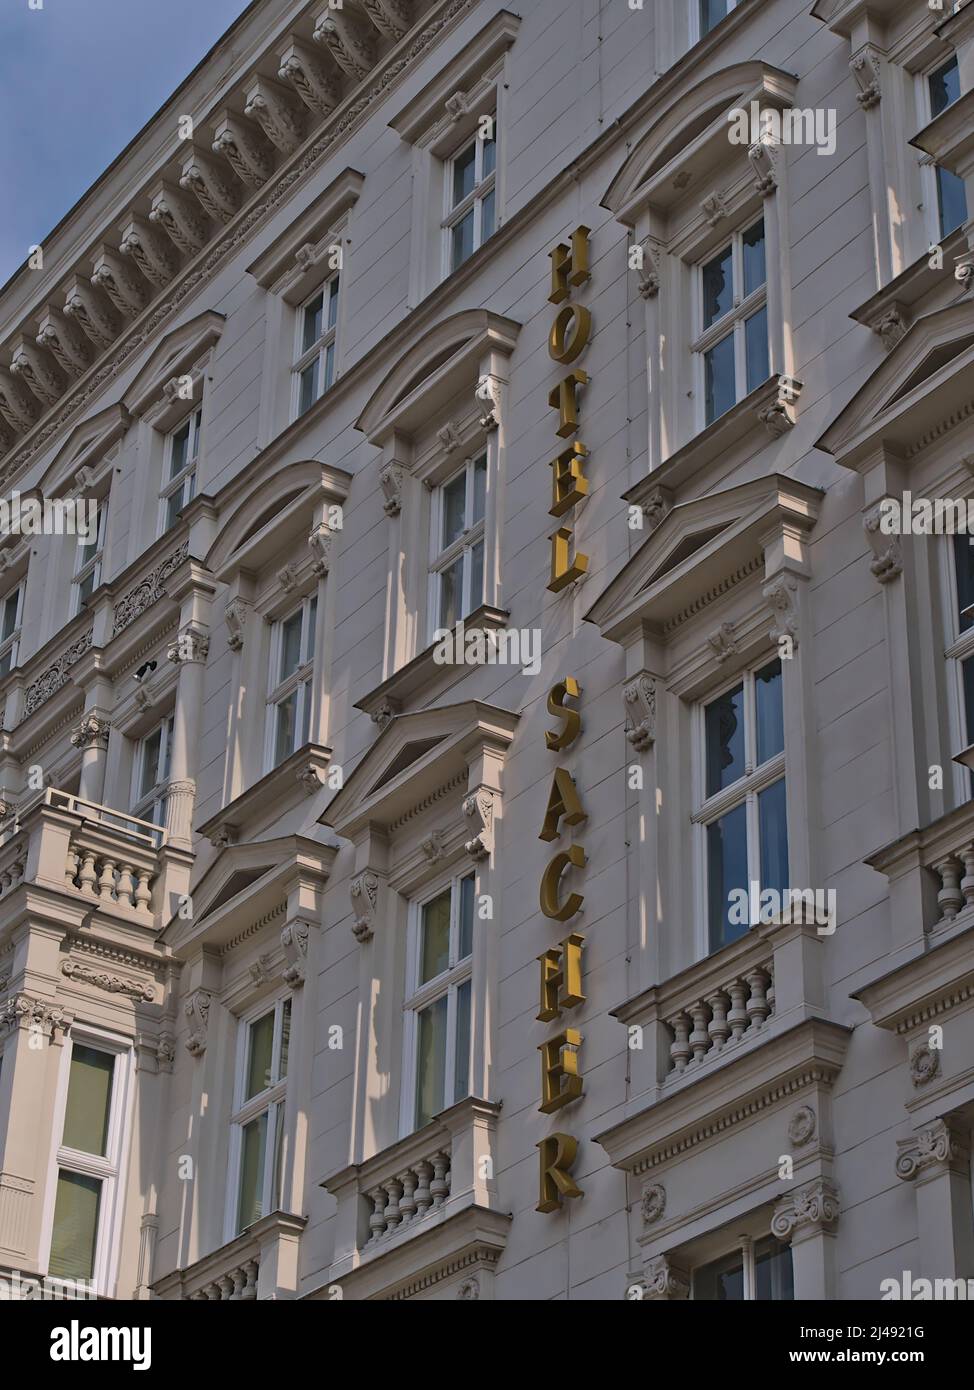 Vista ad angolo basso della facciata decorativa del famoso Hotel Sacher di lusso nel centro storico di Vienna, Austria con scritte. Foto Stock